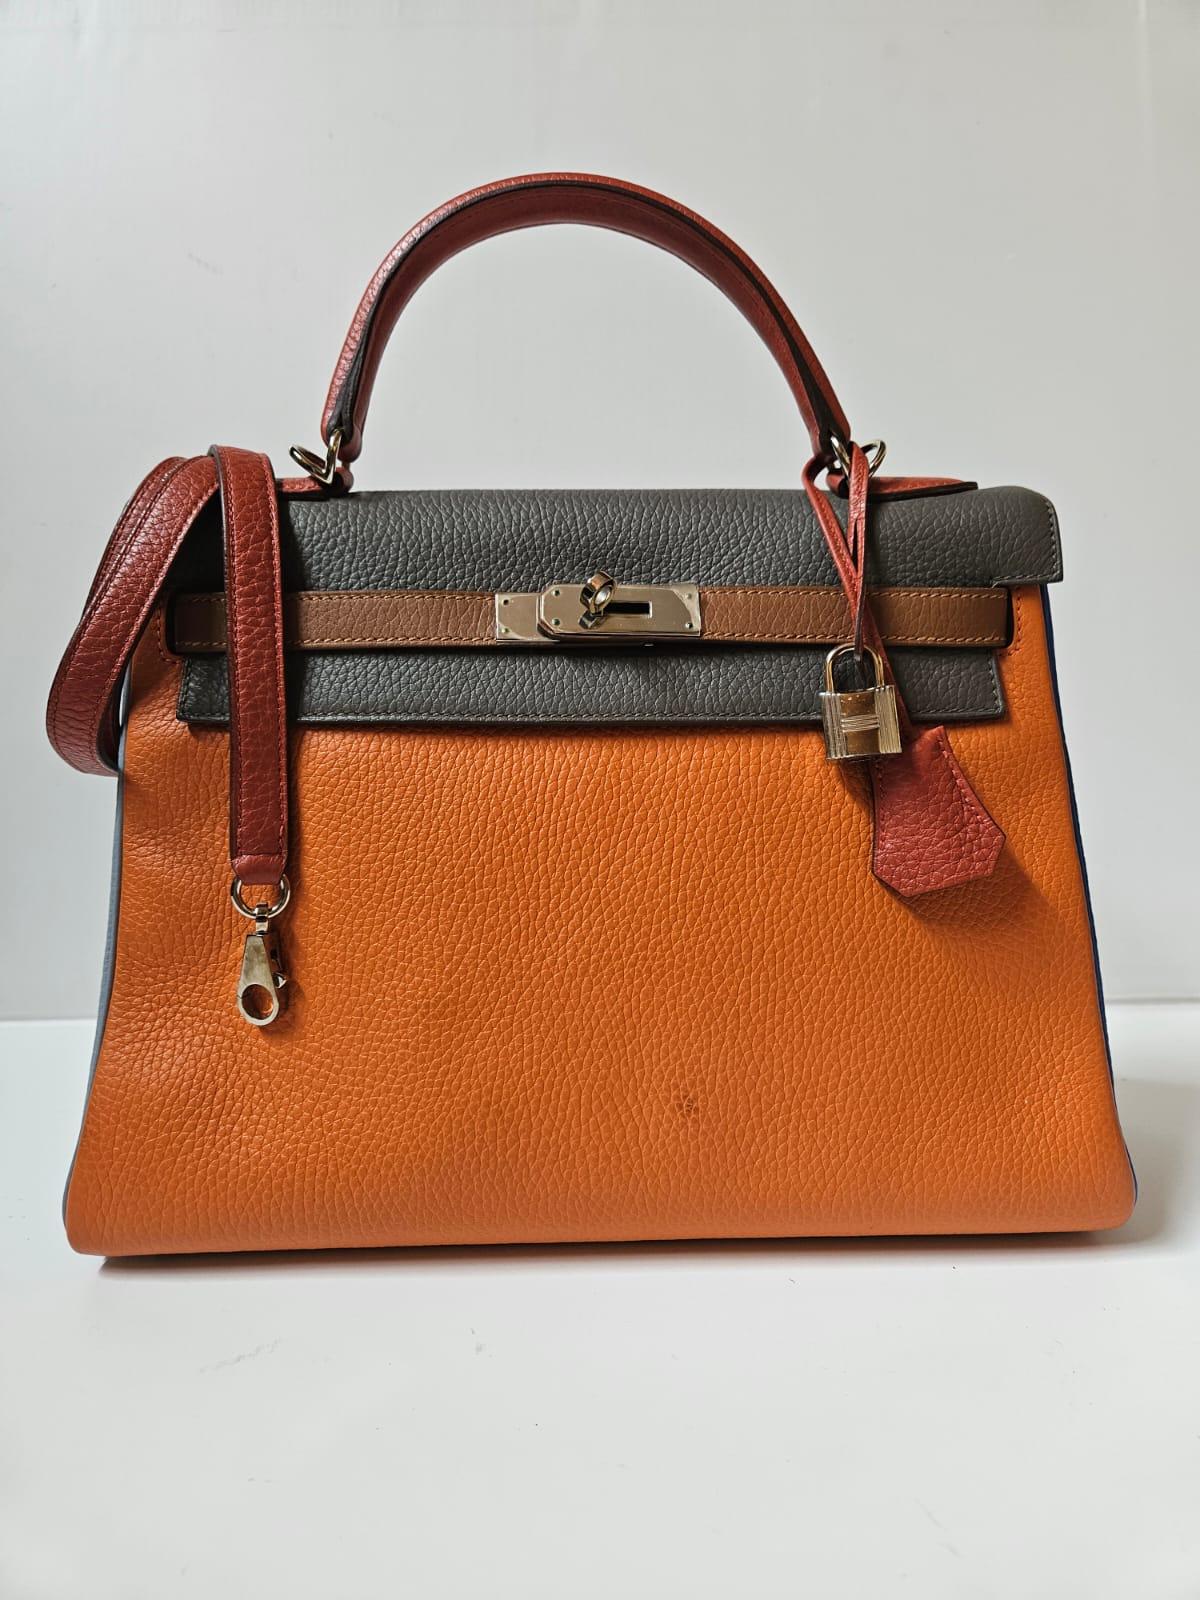 Women's or Men's Rare Hermes Arlequin Clemence Leather Kelly 32 Bag